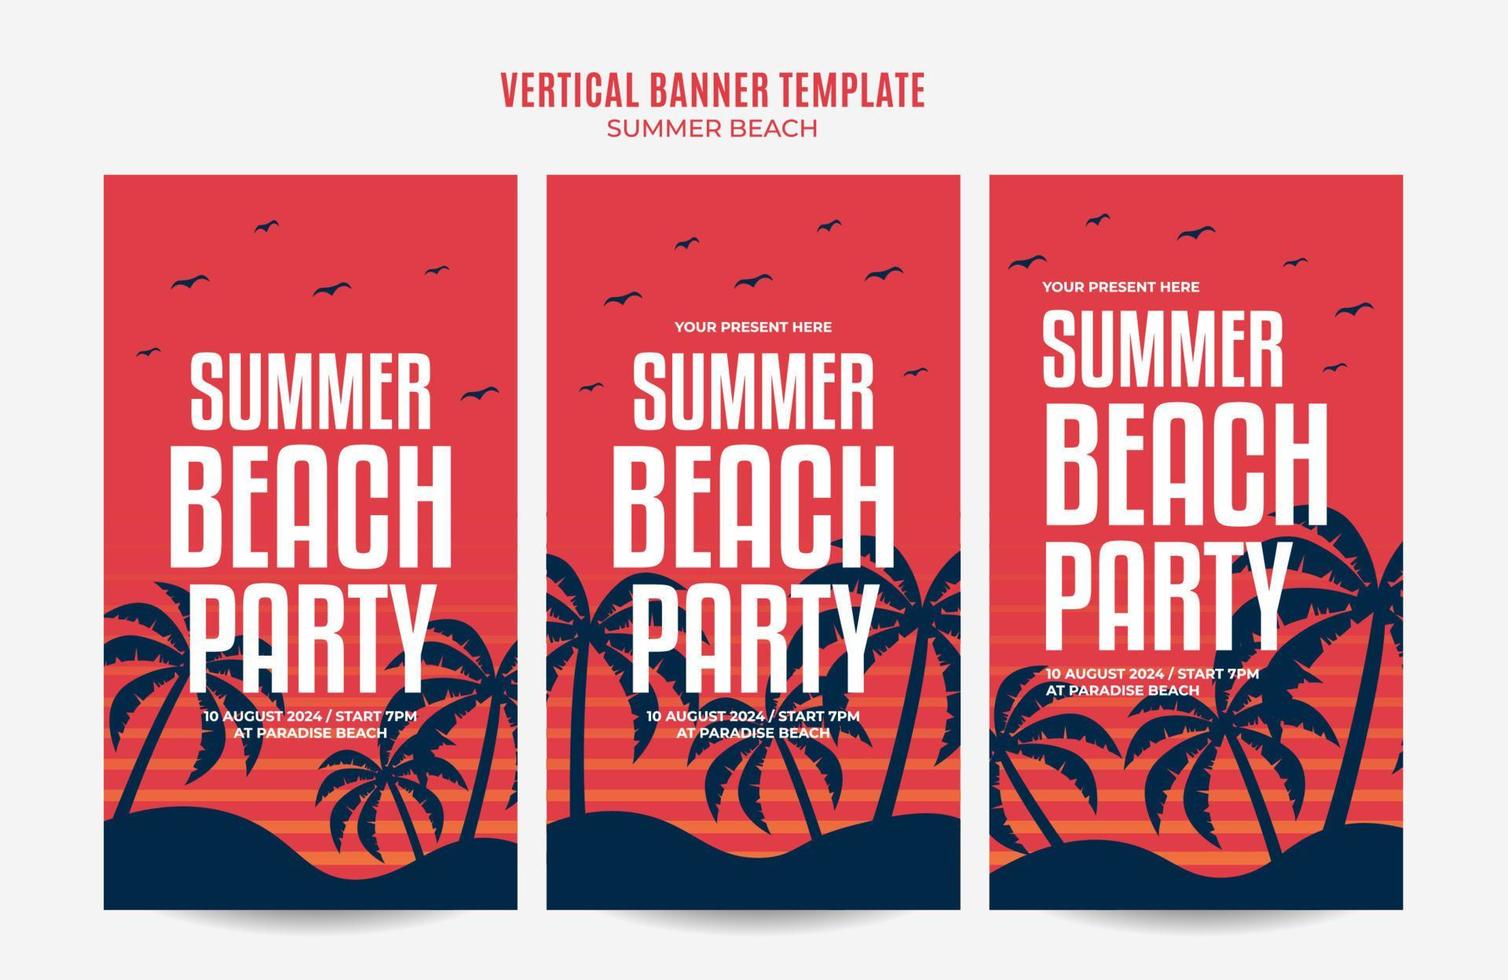 día de verano: banner web de fiesta en la playa para afiches verticales de medios sociales, banner, área espacial y fondo vector